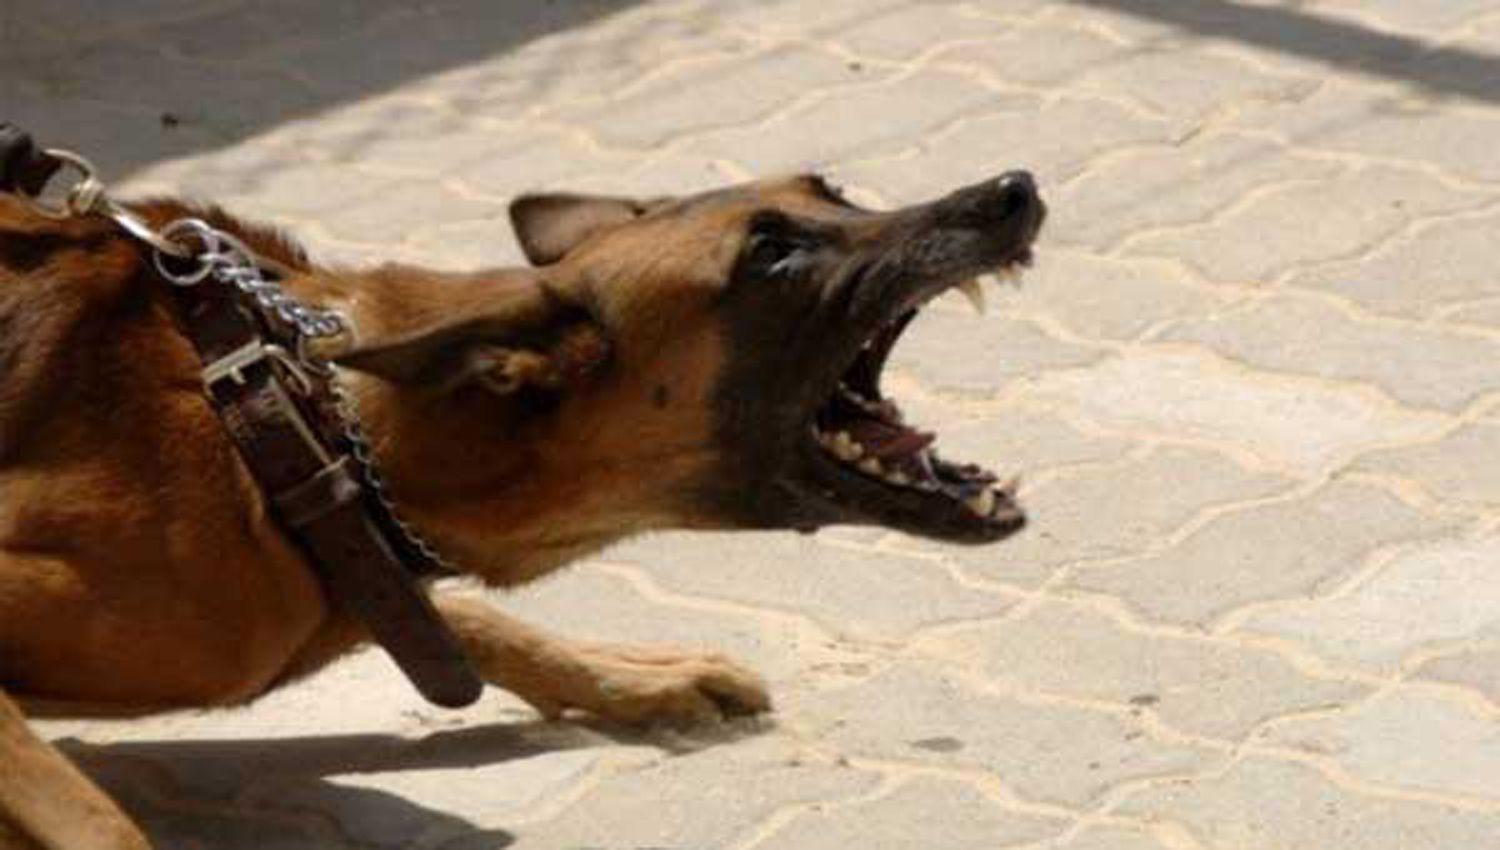 Un perro callejero saltoacute la tapia de una casa y le causoacute graves heridas en el rostro a una nena de 2 antildeos